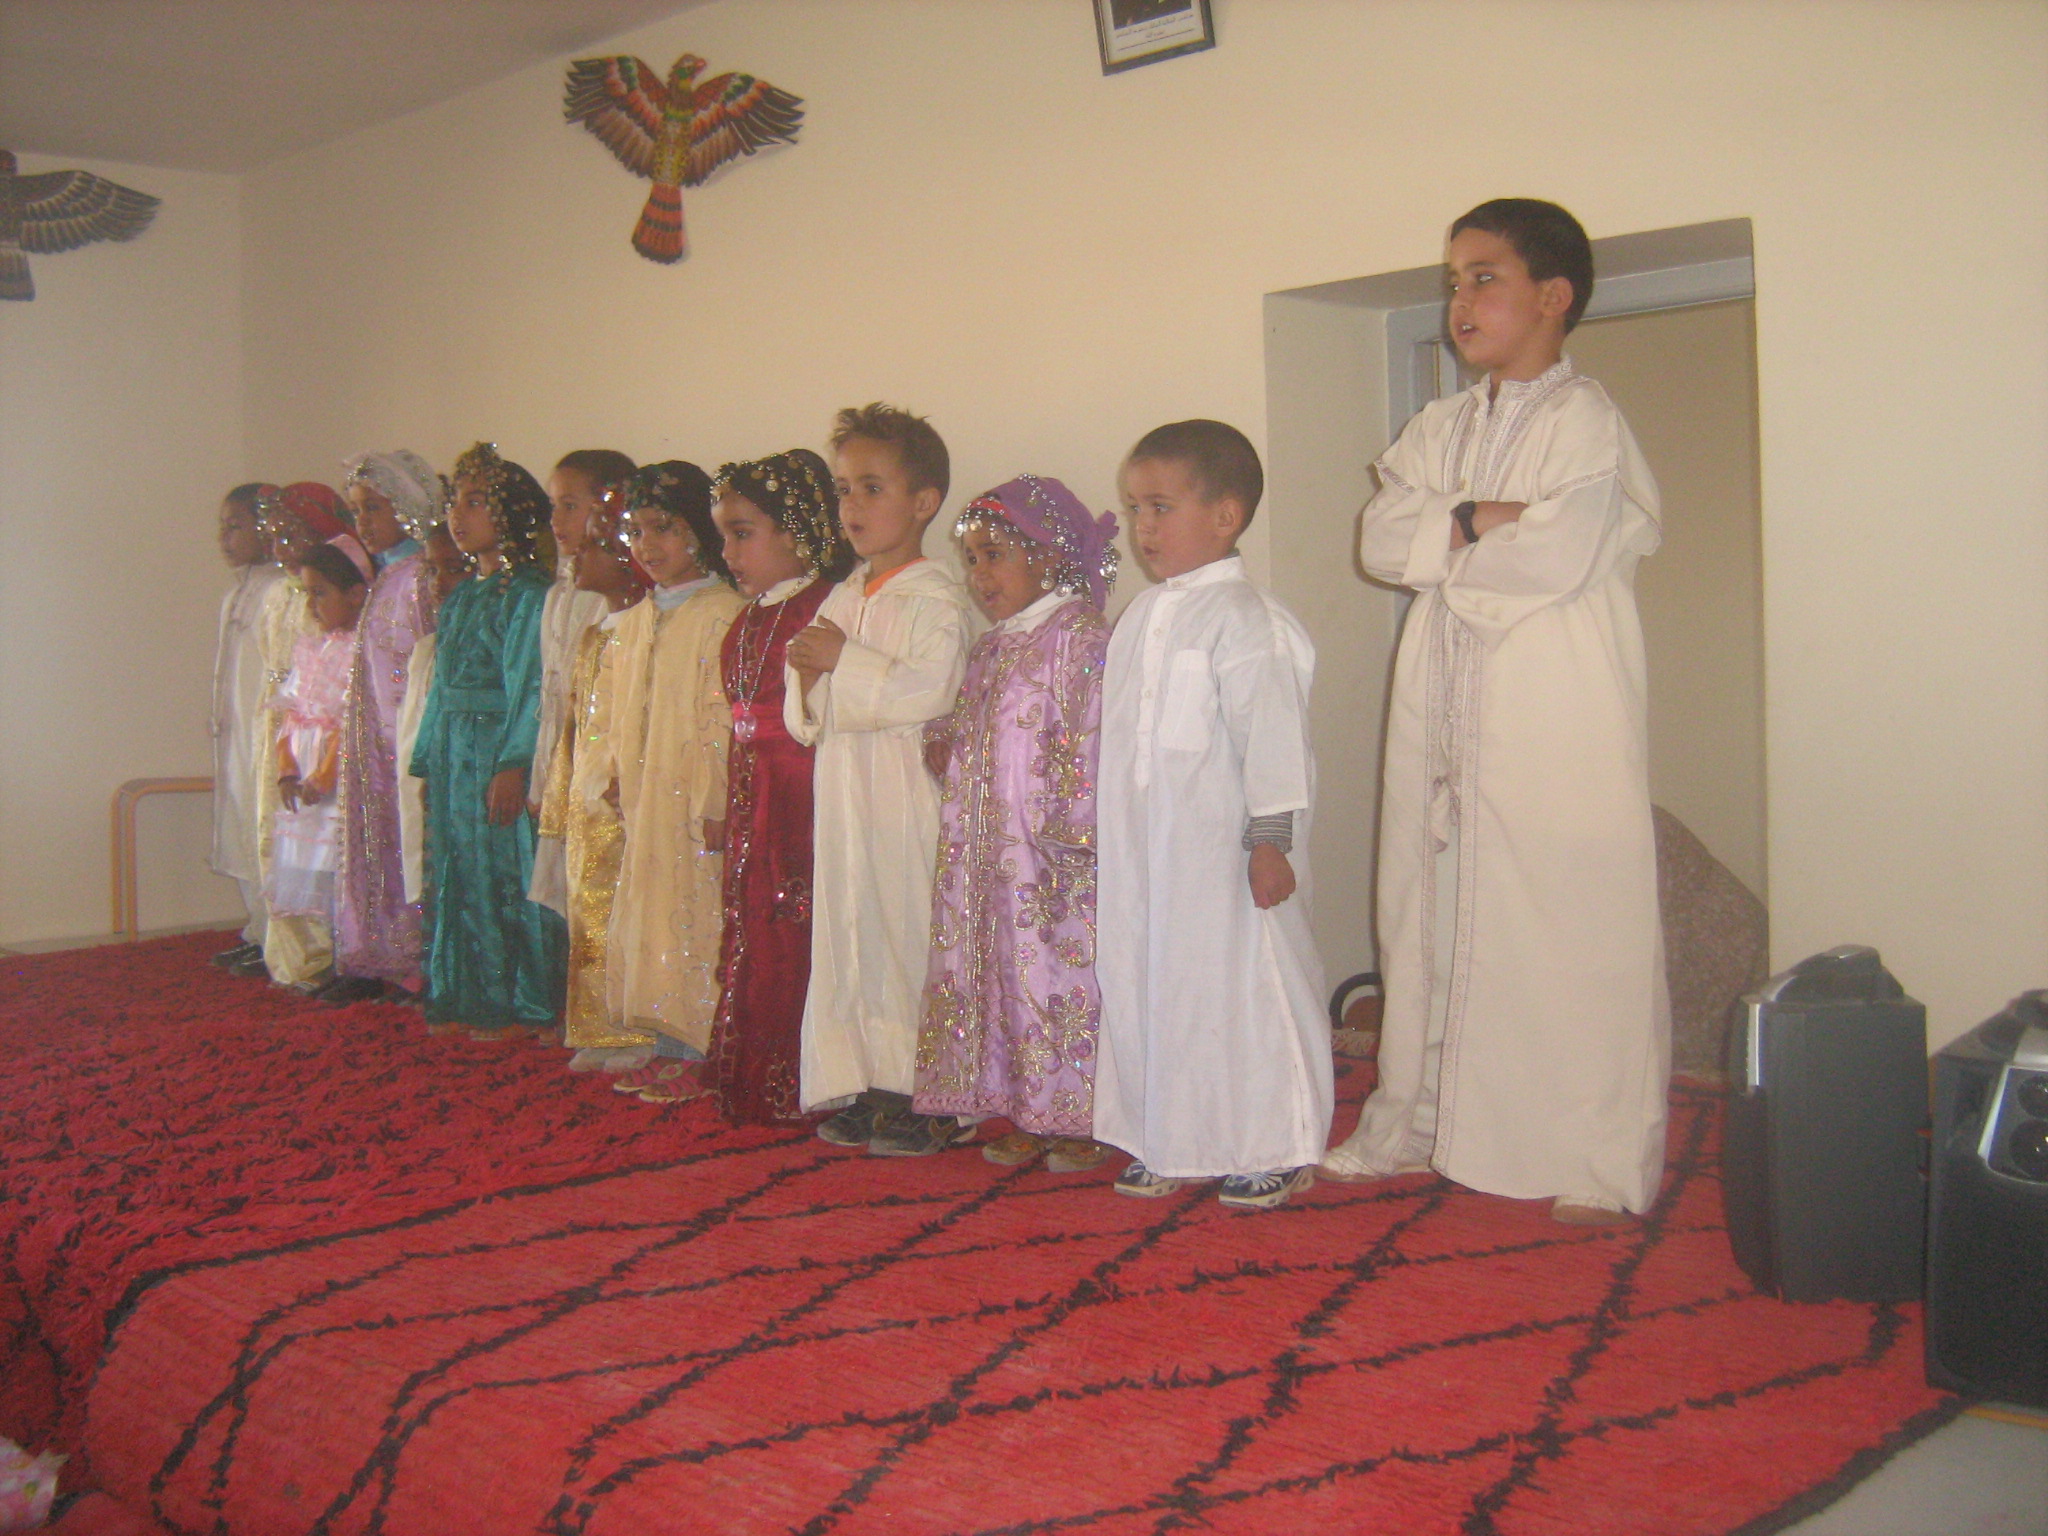 Les enfants de la garderie de TAYMATà la cérémonie du collège IBN KHALDOUN